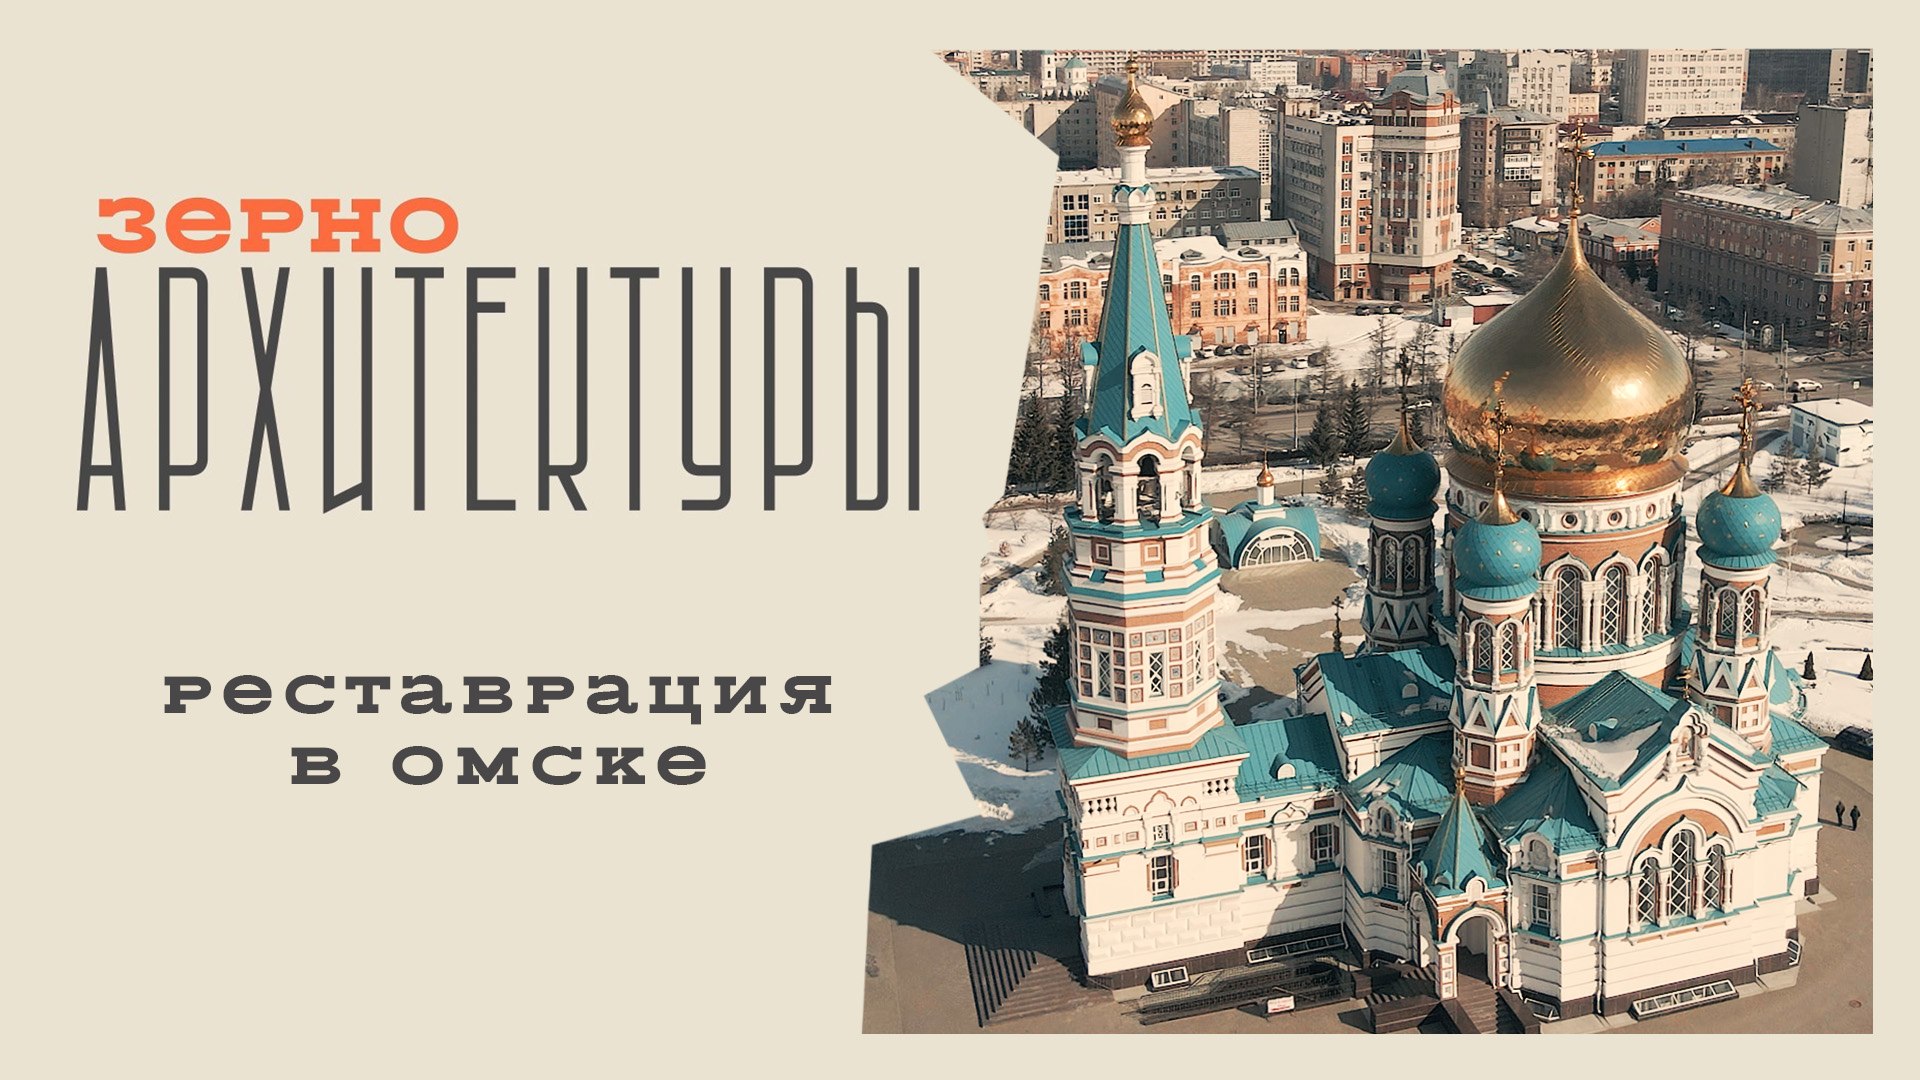 Реставрация в Омске | Видеоподкаст «Зерно архитектуры»